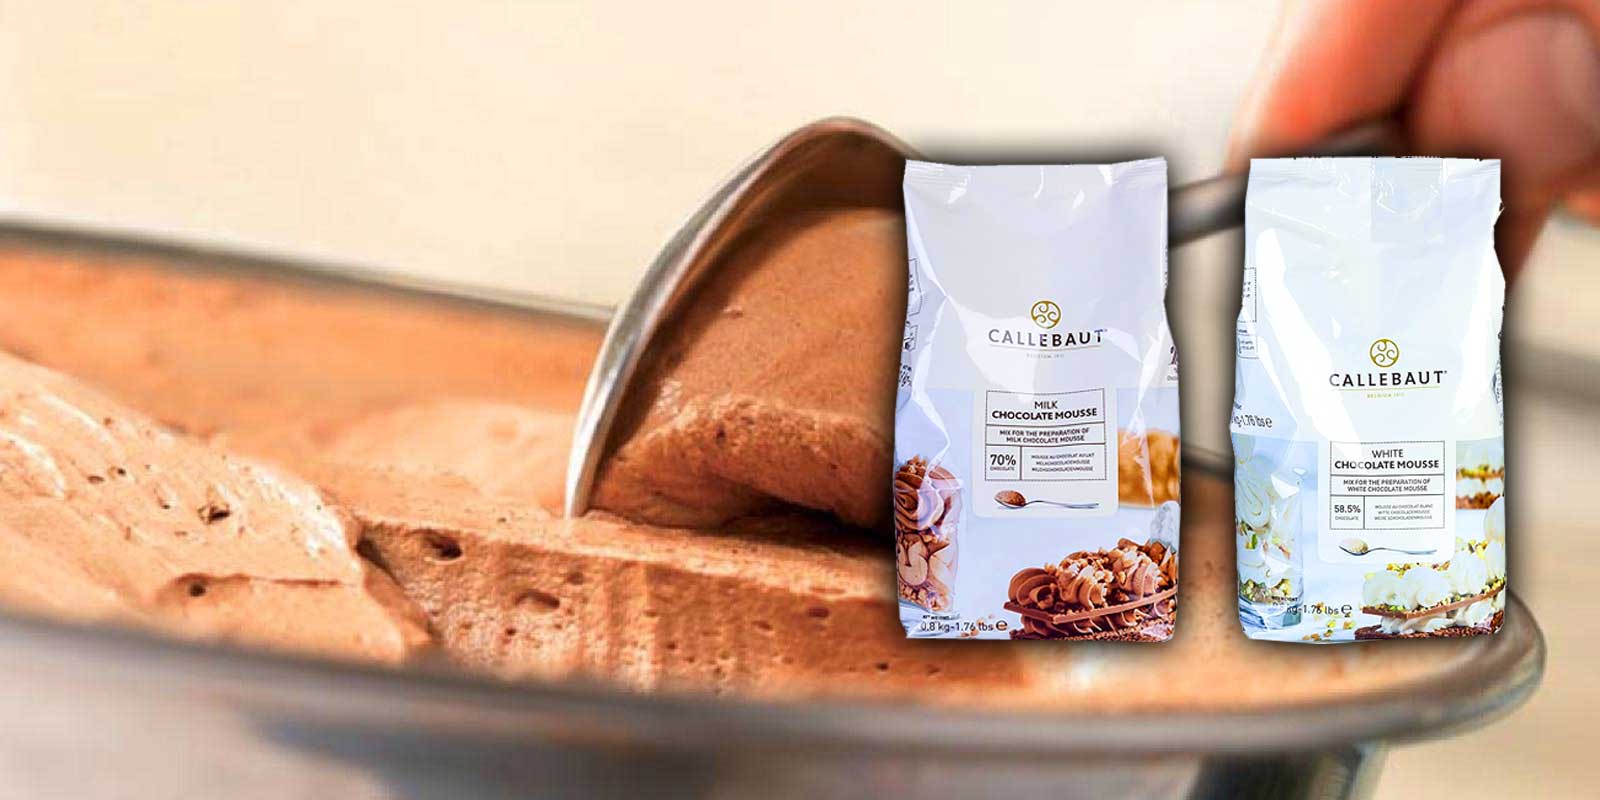 Moussepulver und Krokant von Callebaut Callebaut möchte jeden Konditor mit großartiger Schokolade zu versorgen und Sie darin zu unterstützen, was Sie am meisten lieben - die Herstellung von wundervollen schokoladigen Köstlichkeiten für Ihre Kunden und Freunde, dass ist das Ziel von Callebaut. Alles begann 1911 in einer belgischen Kleinstadt namens Wieze.